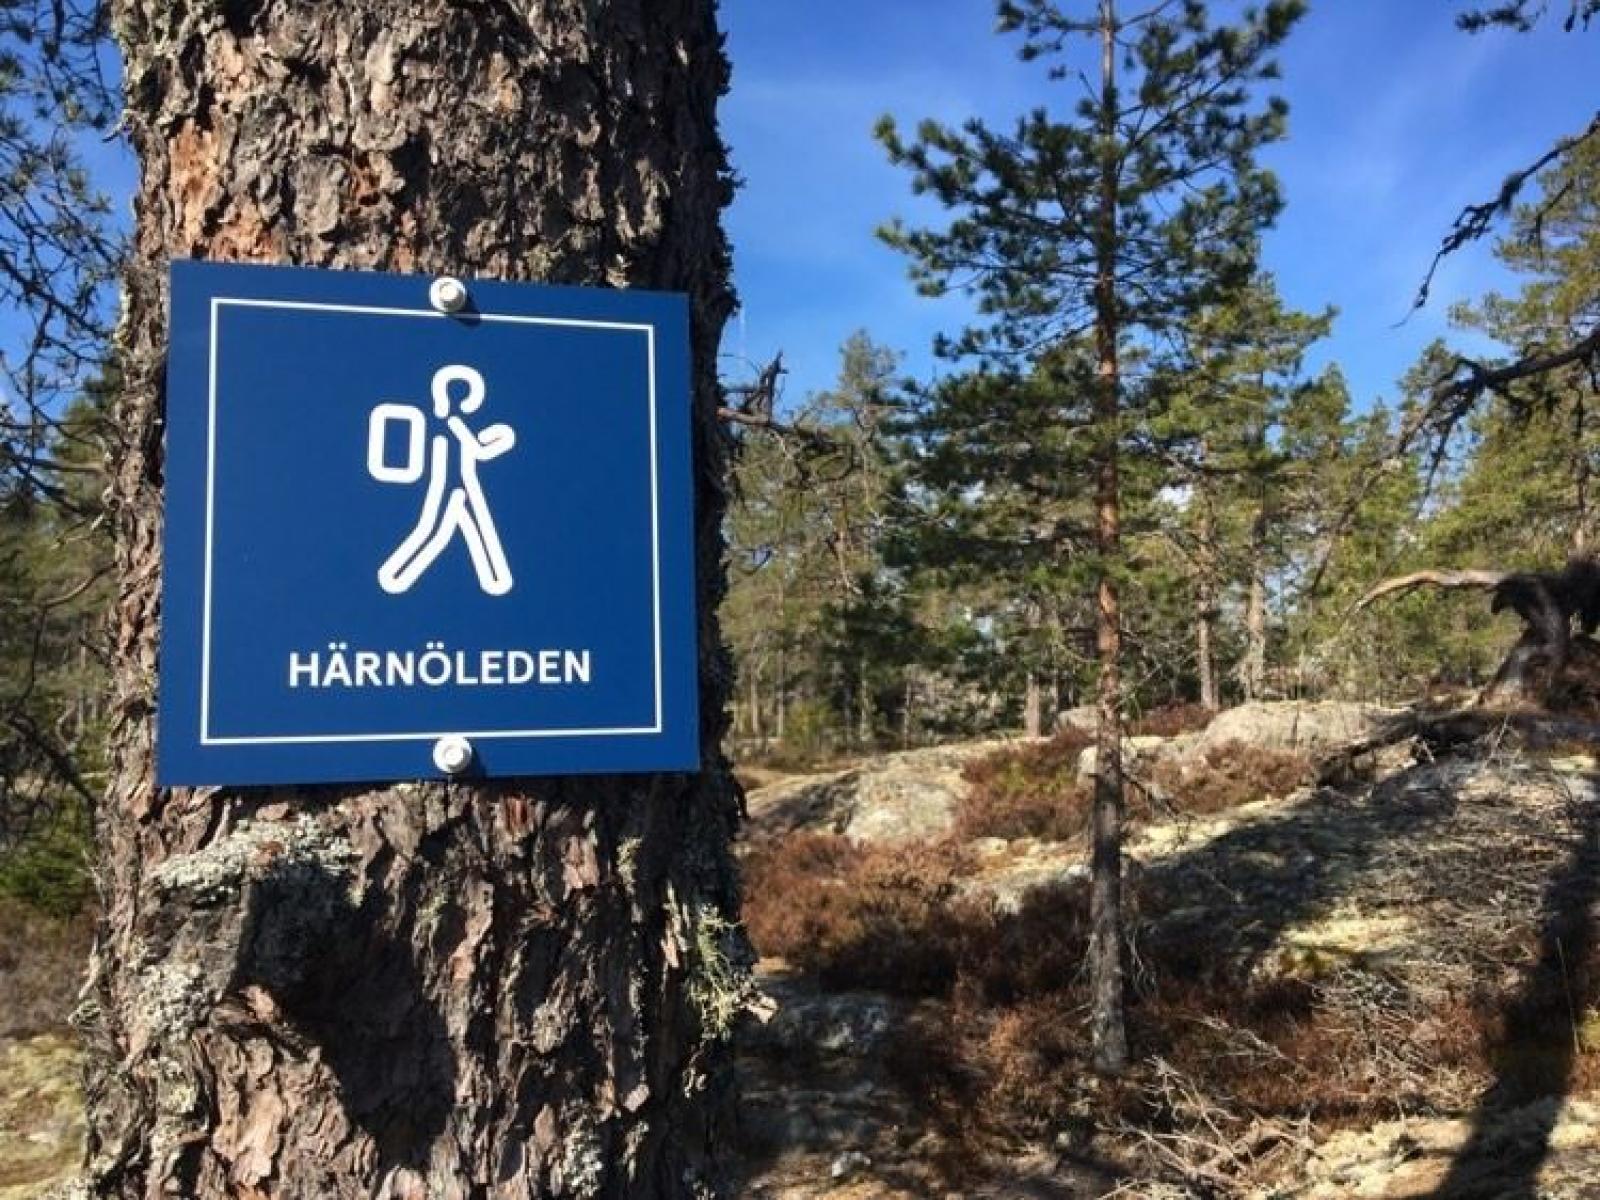 The Härnöleden Trail